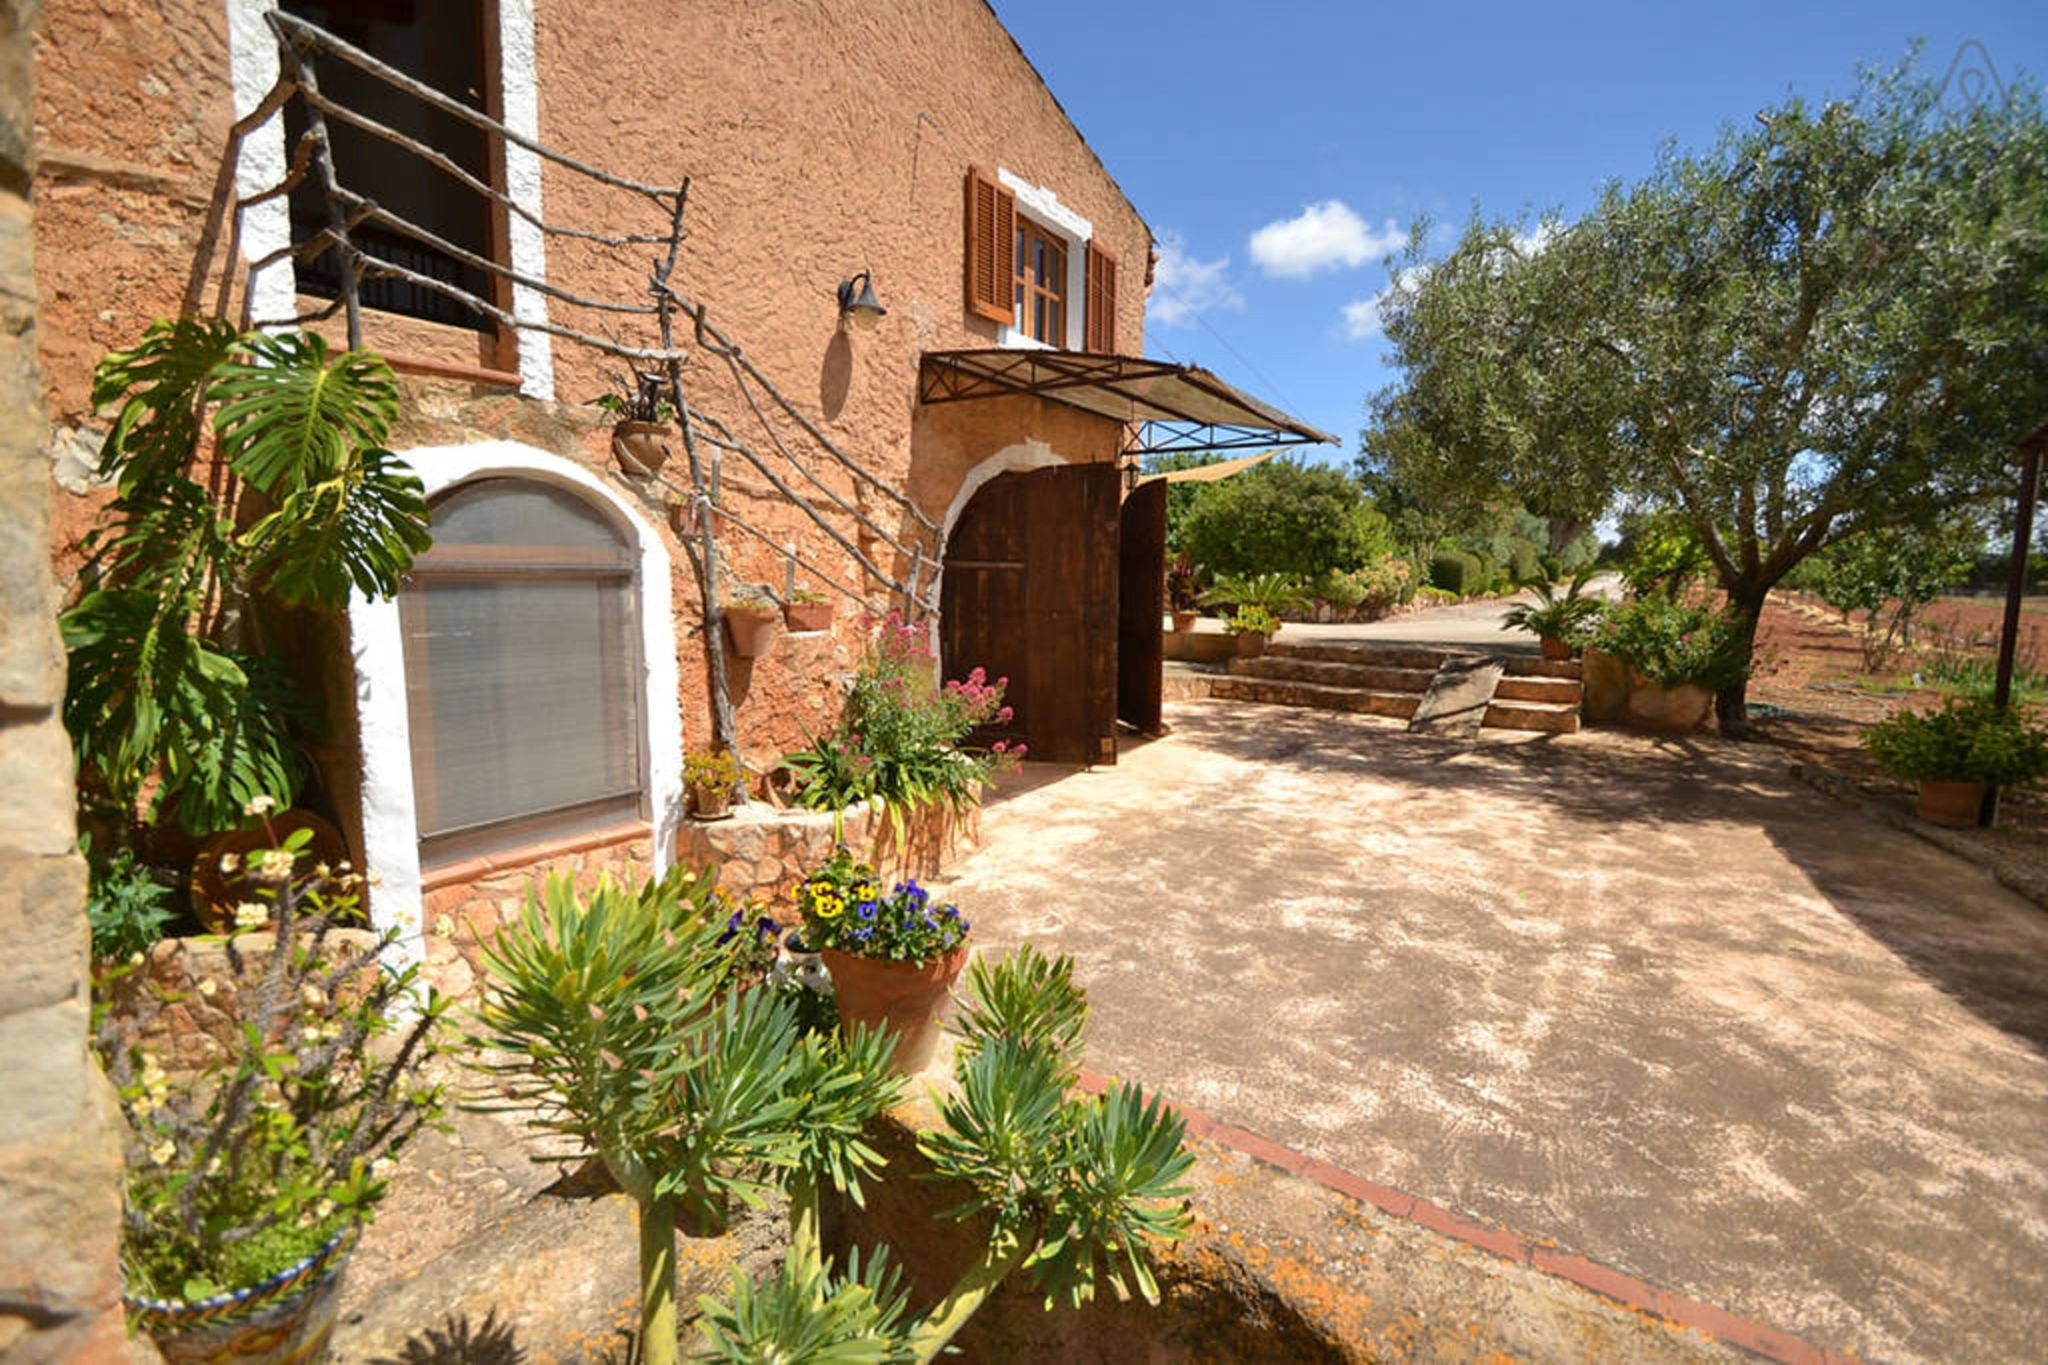 Maison authentique avec terrasse et piscine privée, à la campagne